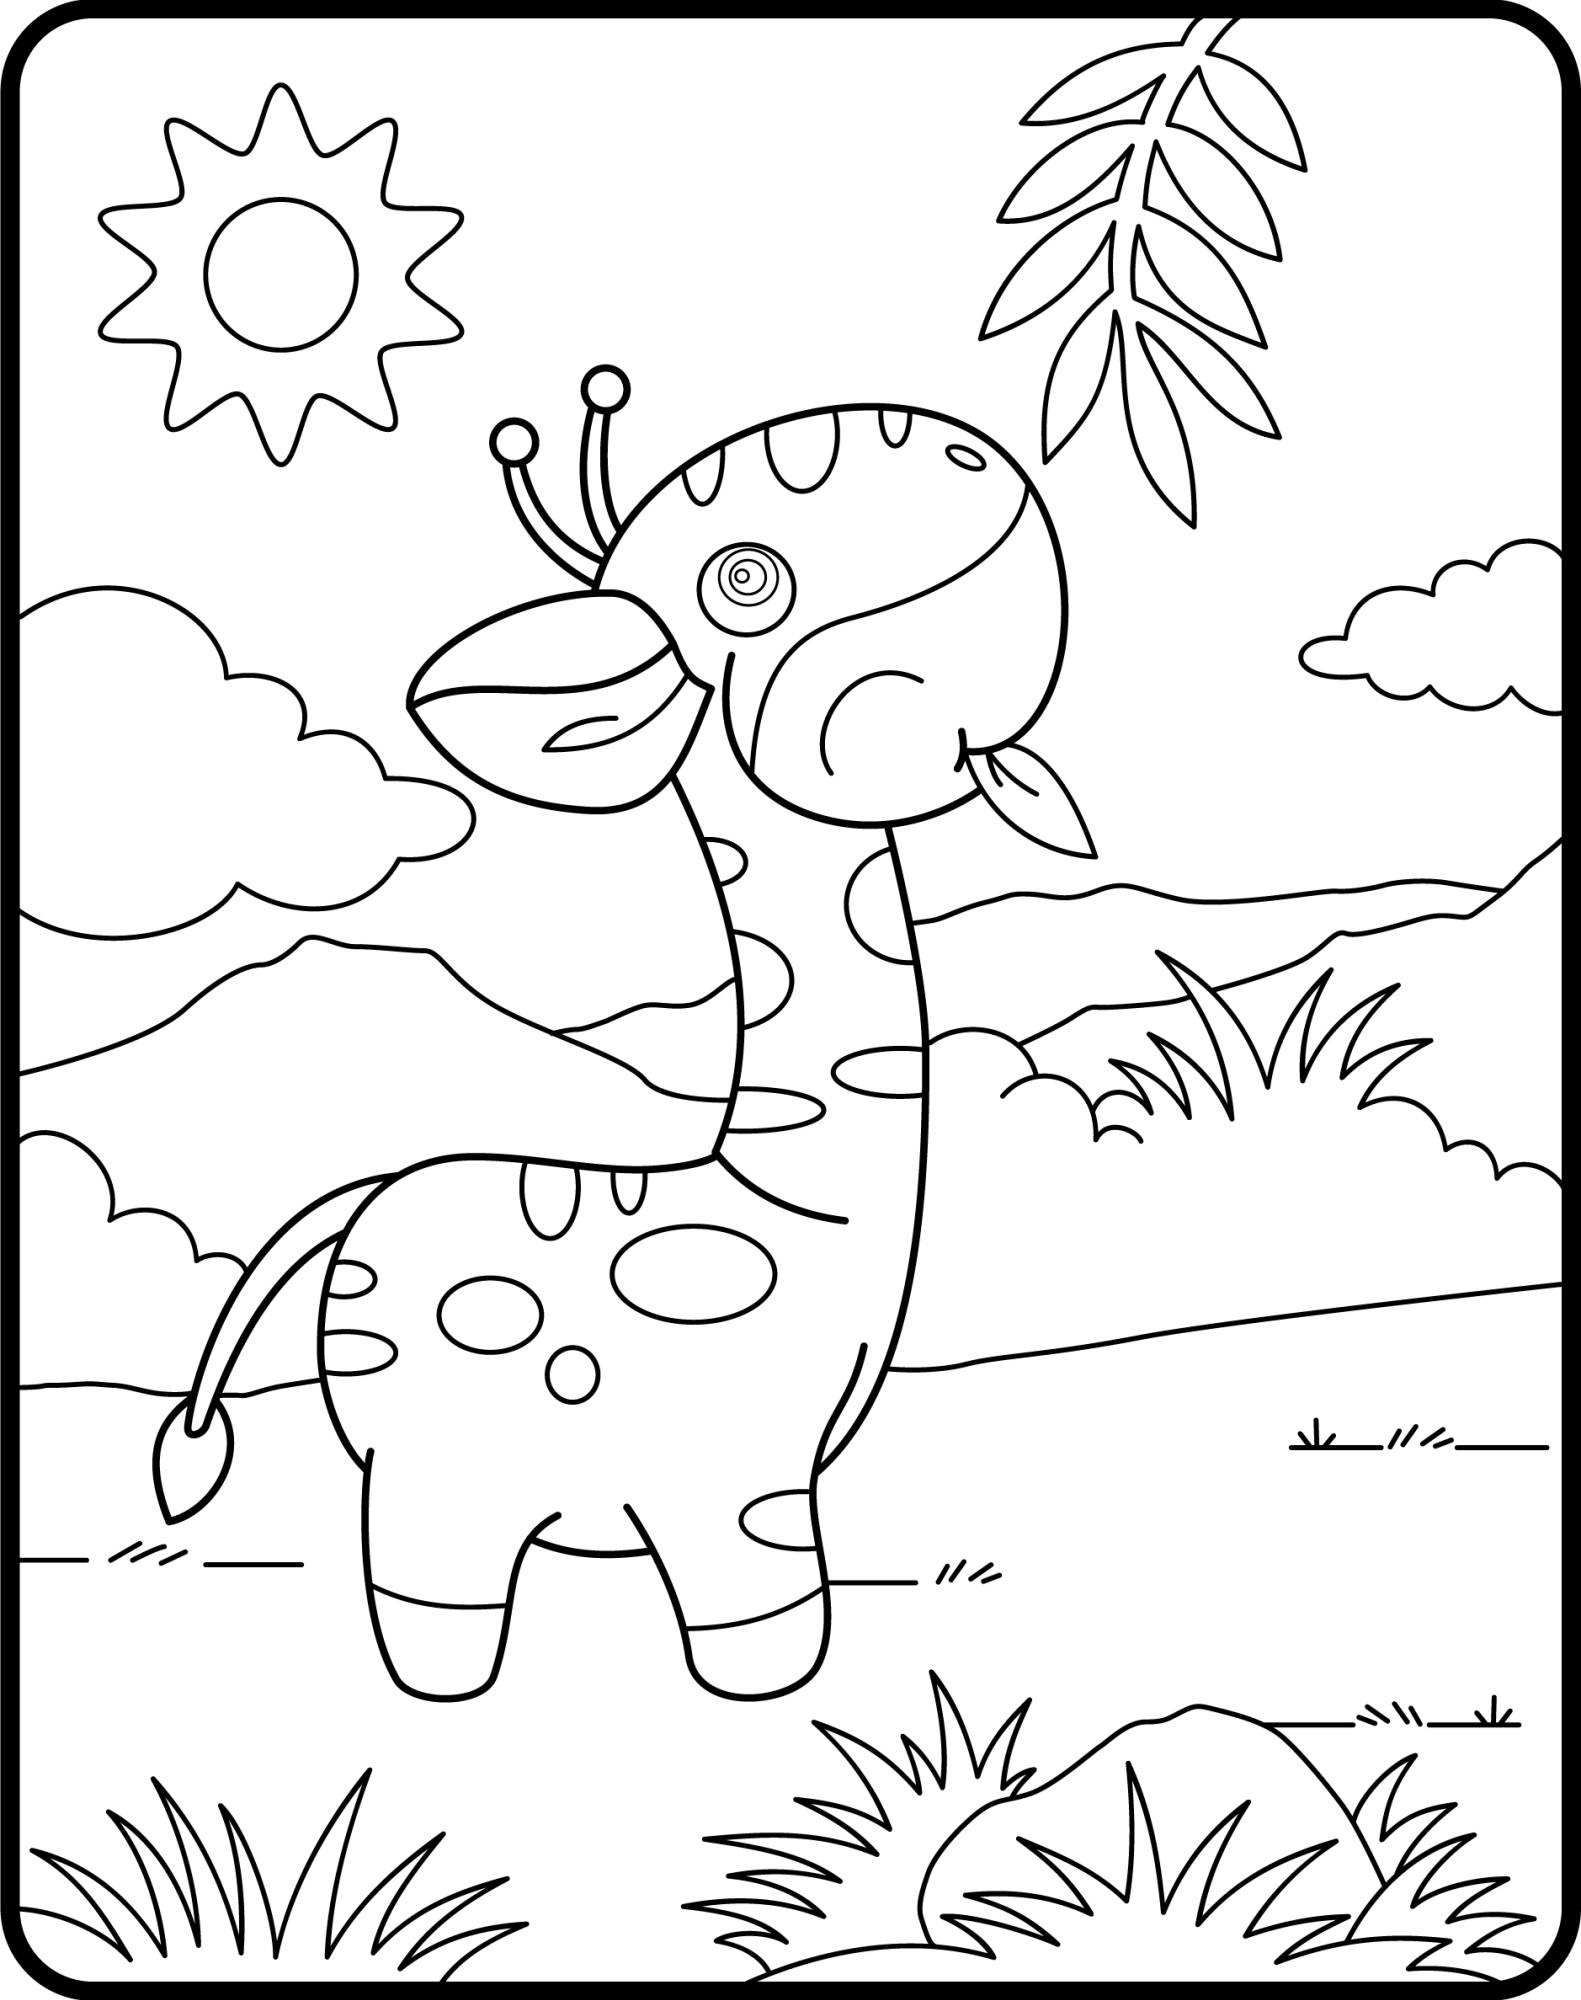 Раскраска для детей: маленький жираф кушает листик